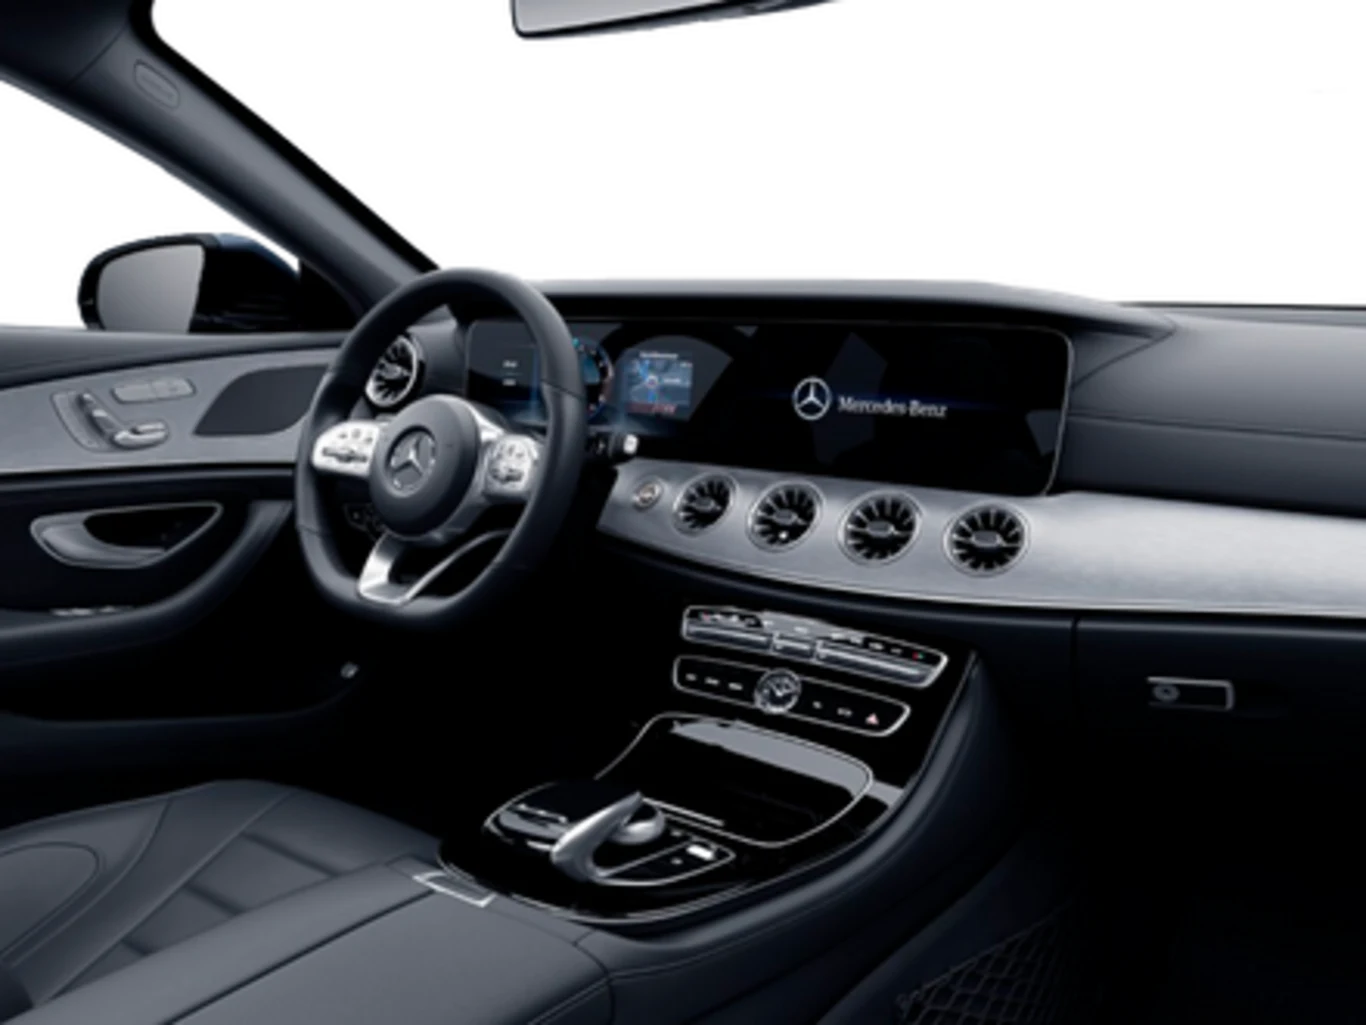 Mercedes-Benz CLS 450 3.0 I6 GASOLINA SPORT 4MATIC 9G-TRONIC 